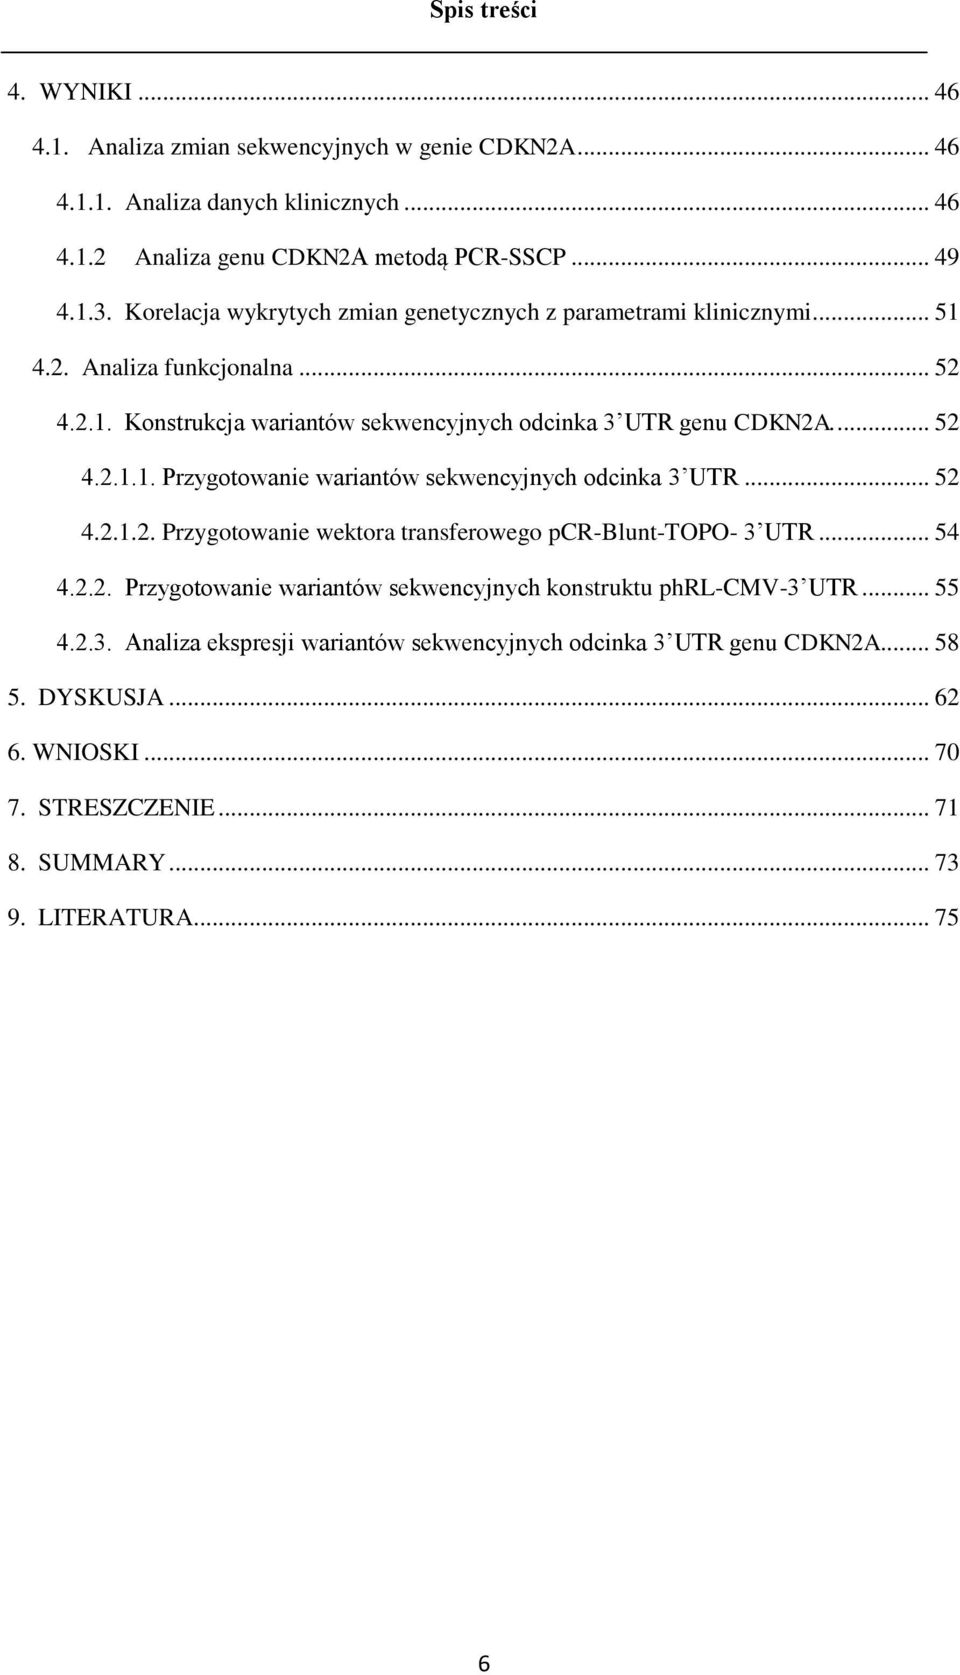 .. 52 4.2.1.2. Przygotowanie wektora transferowego pcr-blunt-topo- 3 UTR... 54 4.2.2. Przygotowanie wariantów sekwencyjnych konstruktu phrl-cmv-3 UTR... 55 4.2.3. Analiza ekspresji wariantów sekwencyjnych odcinka 3 UTR genu CDKN2A.